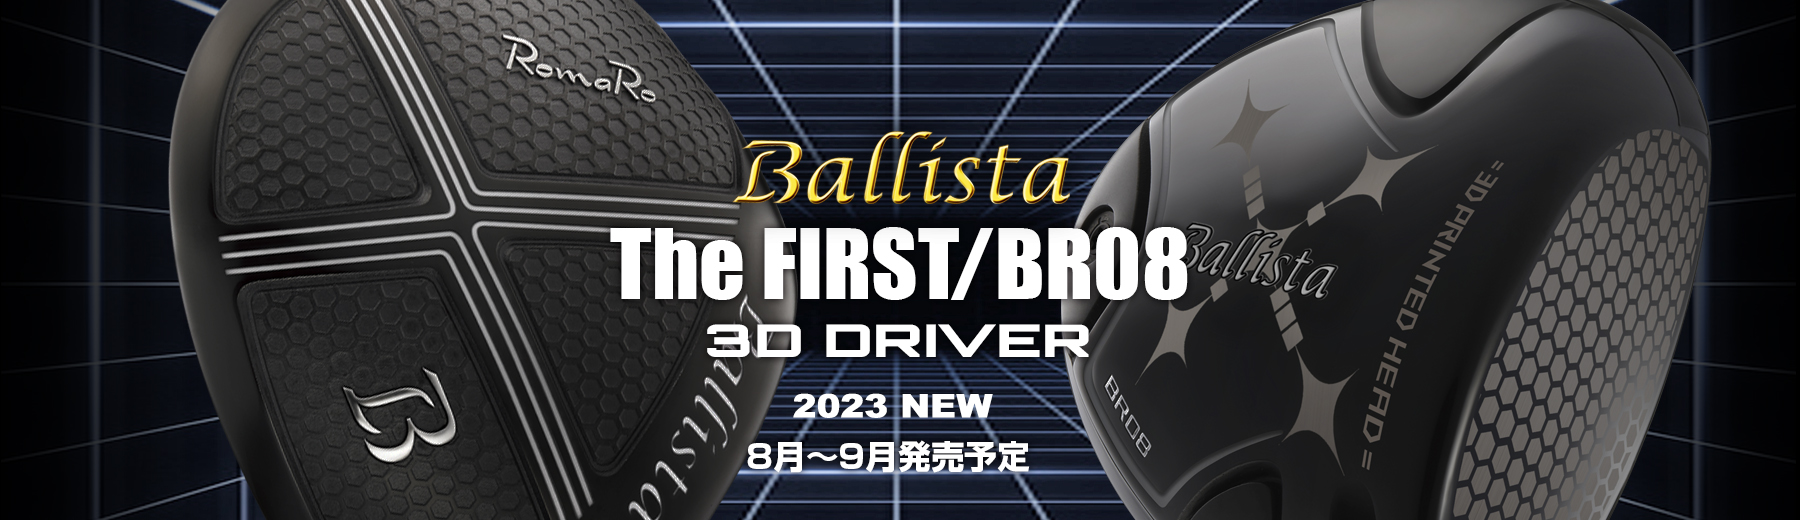 Ballista 3D DRIVER